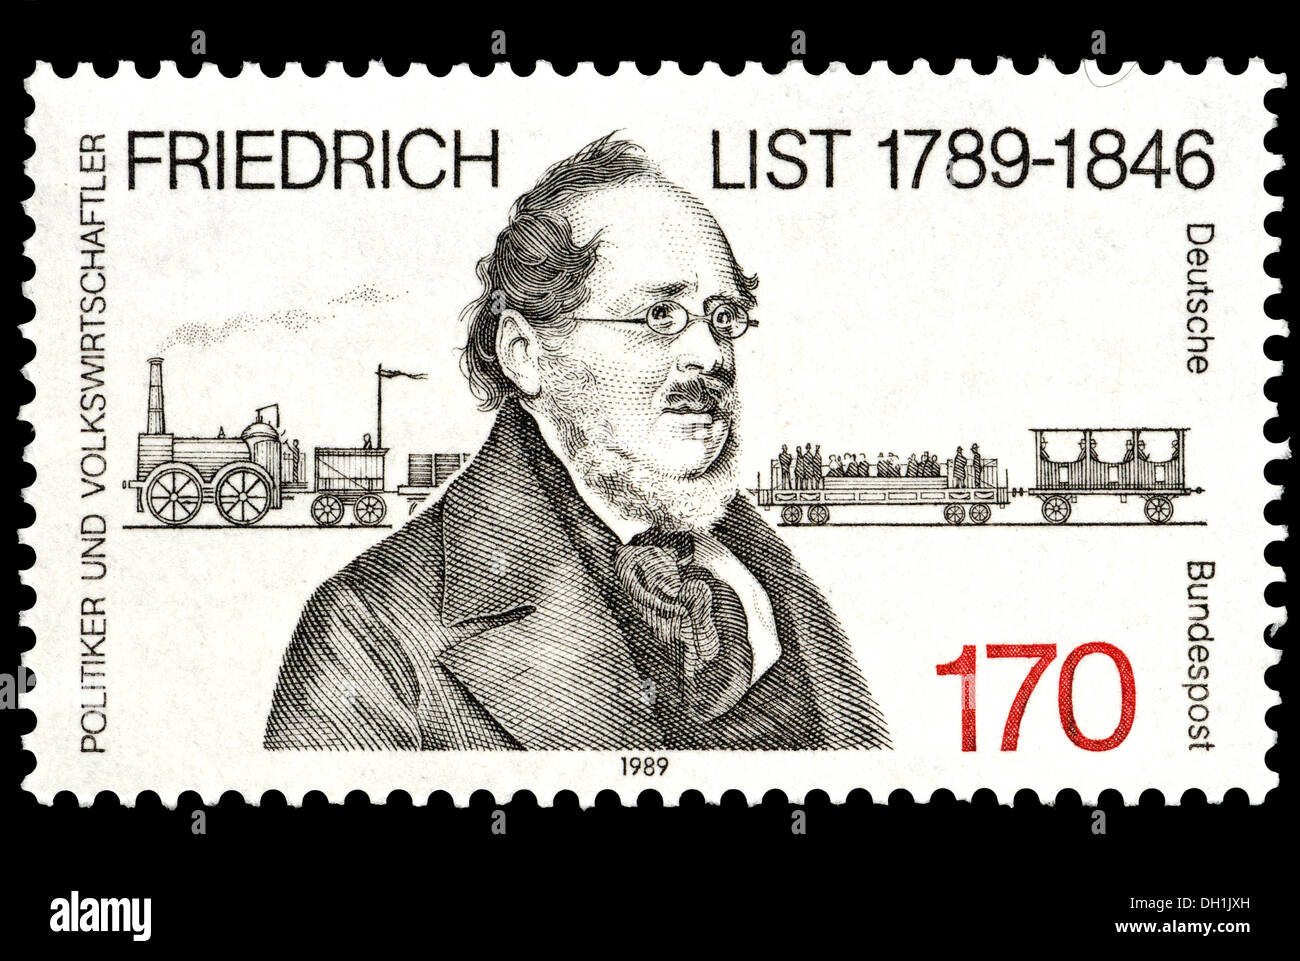 Portrait de Friedrich List (1789-1864 Allemand-américains : homme politique, économiste) sur timbre-poste allemand. Banque D'Images